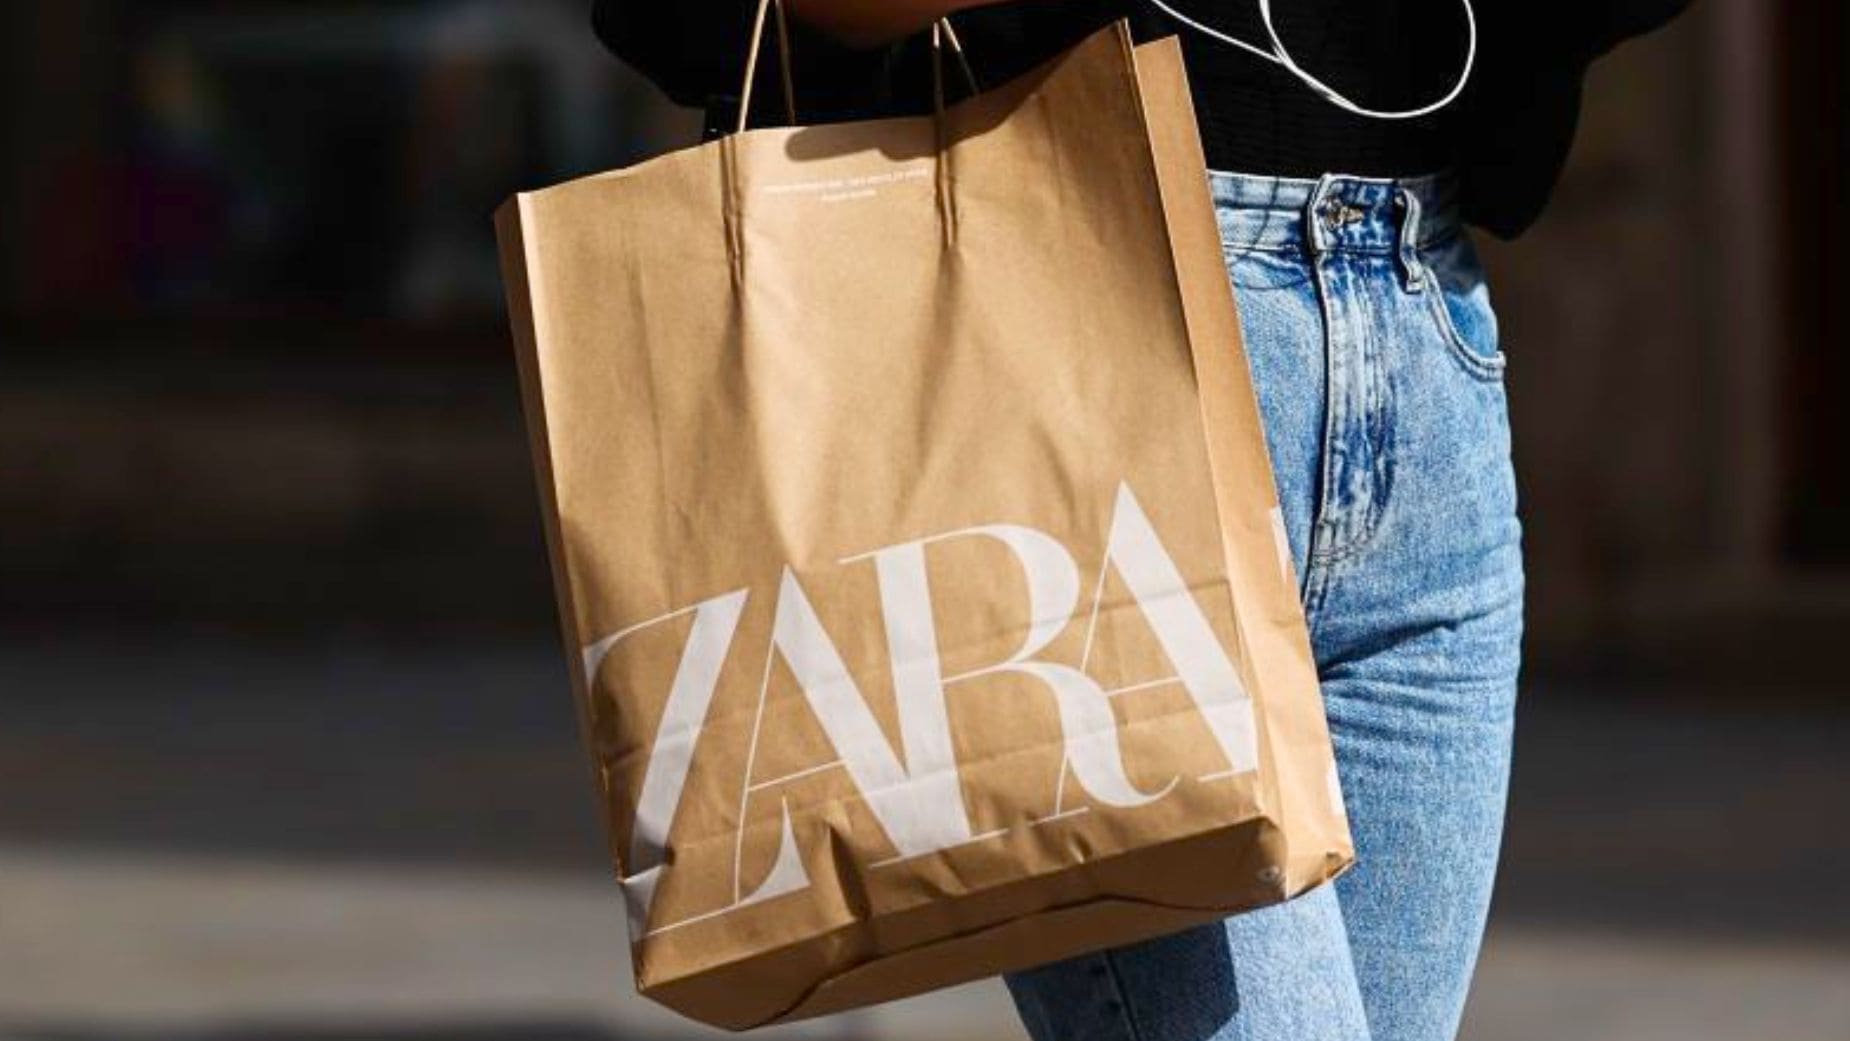 DEVOLUCIONES ZARA  Rebajas en Zara: esto te cobrarán si quieres